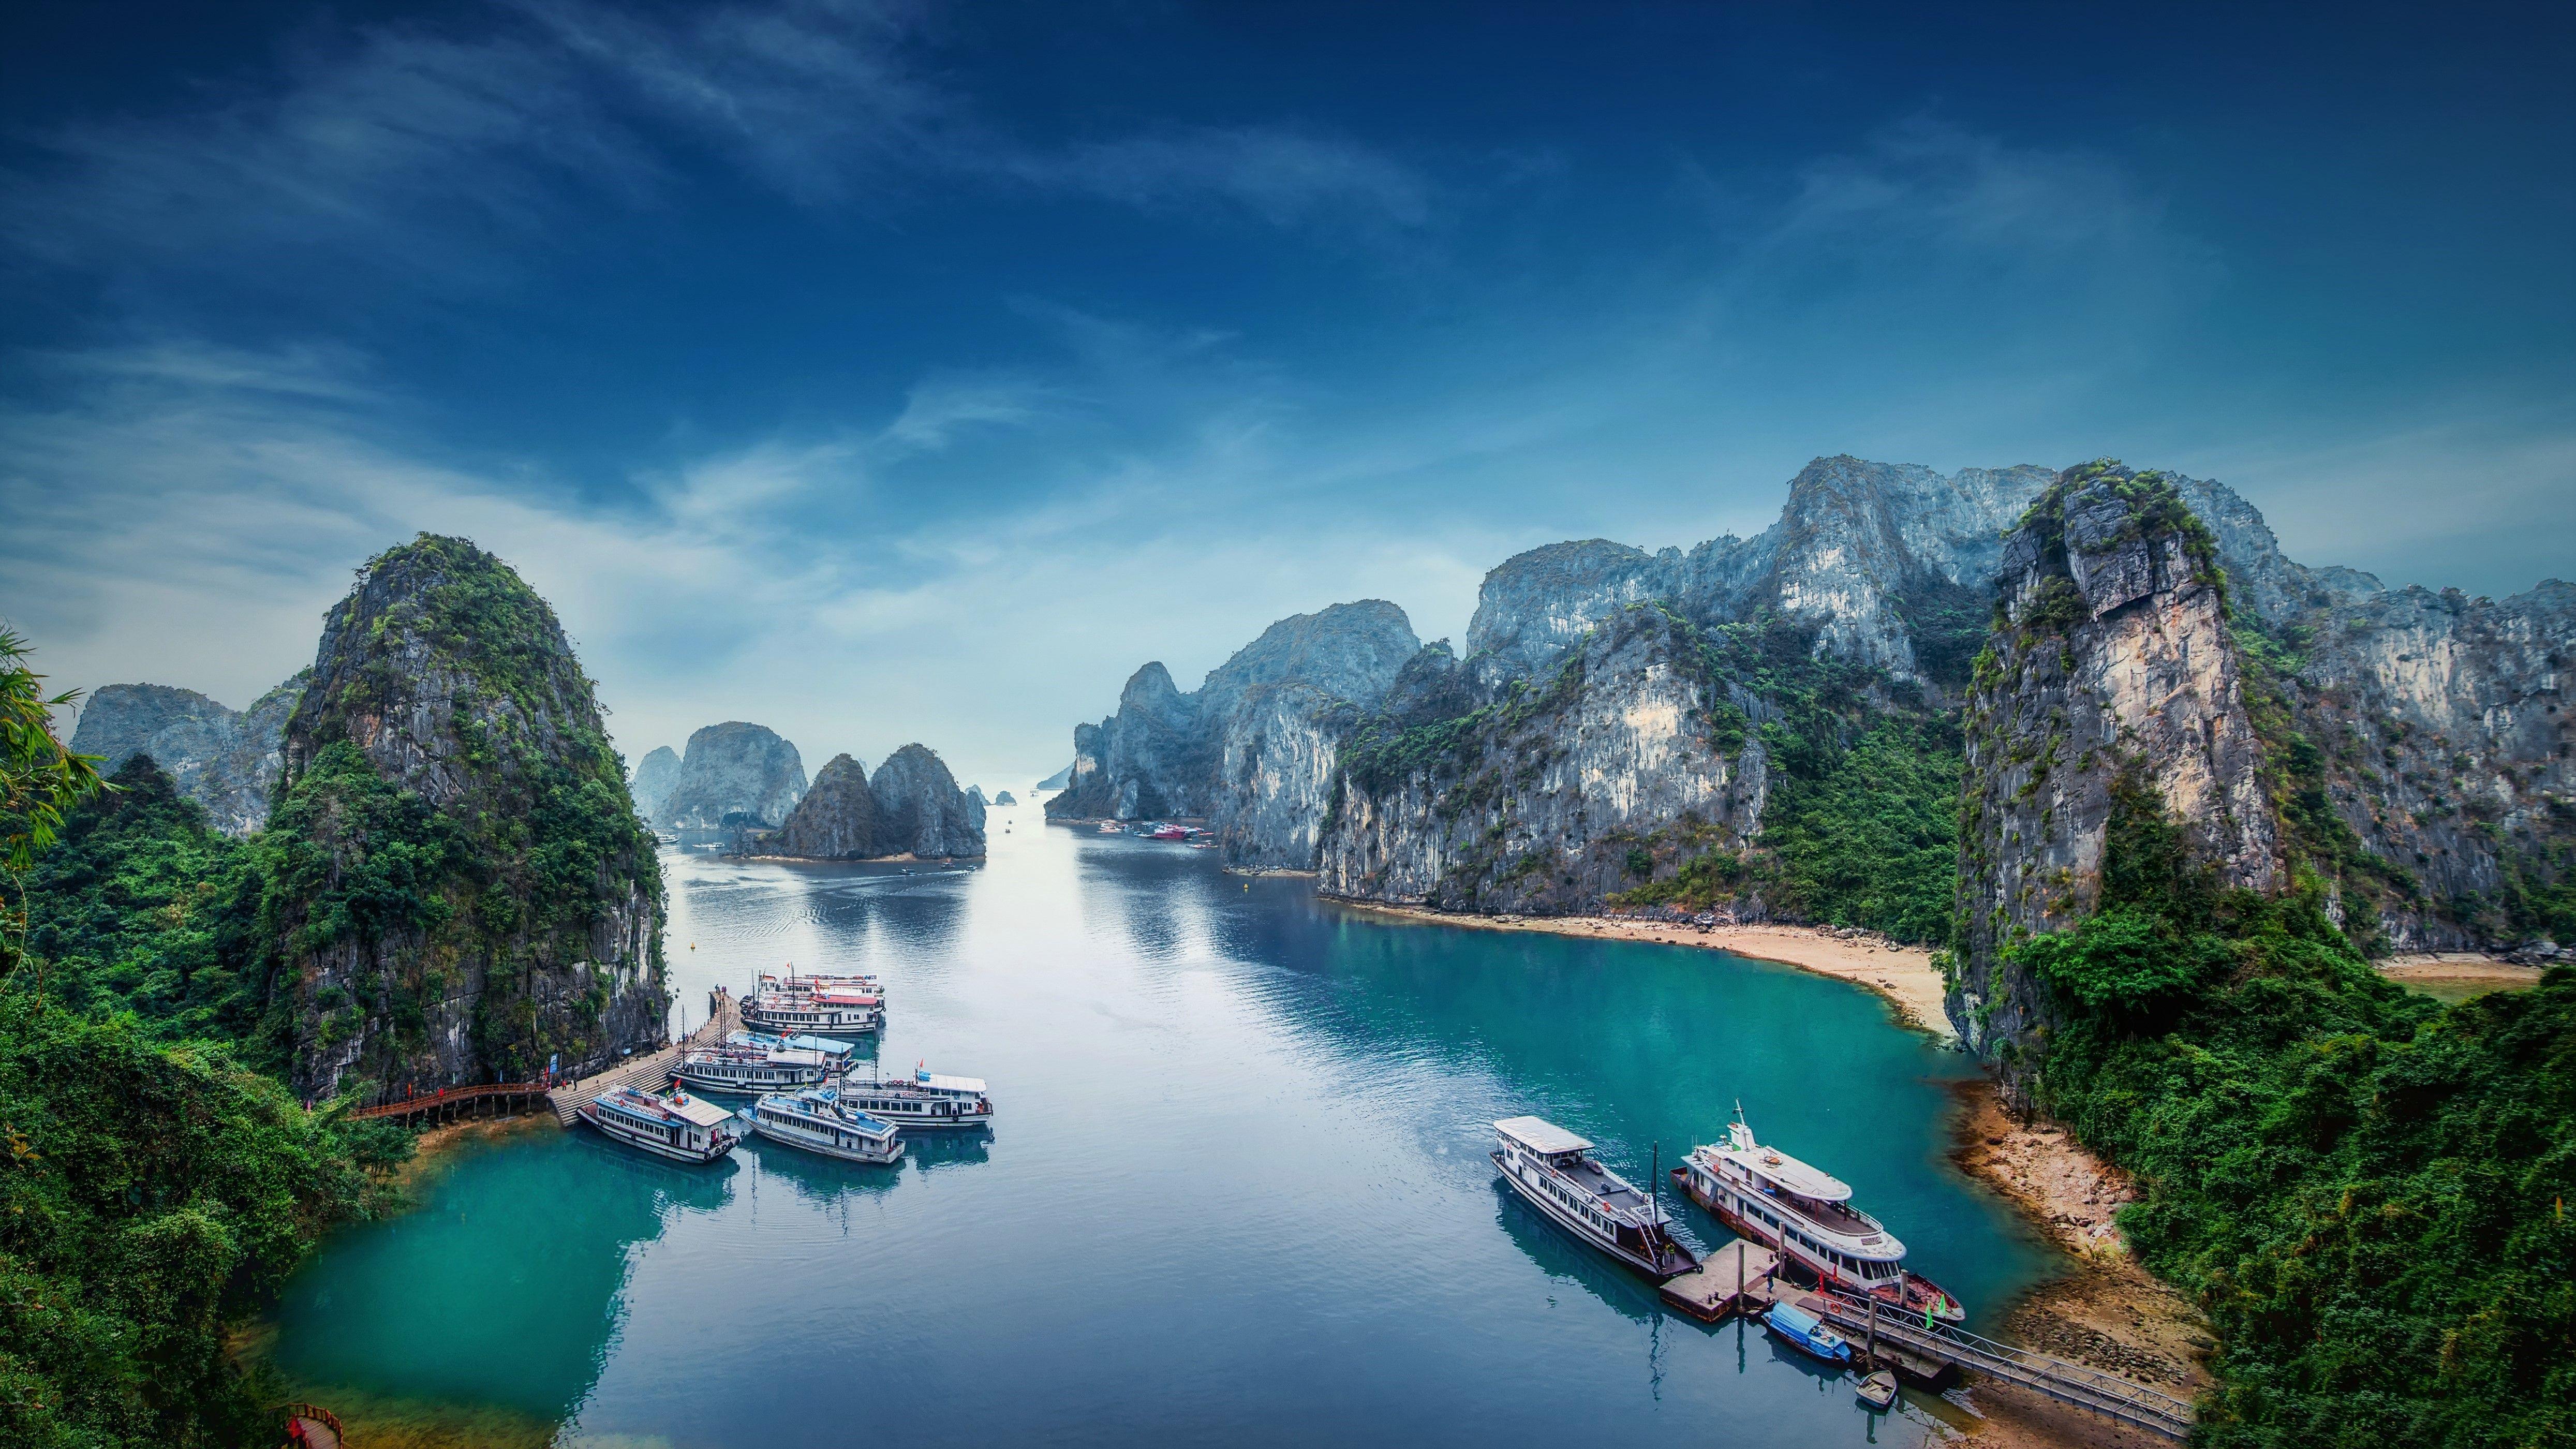 Với thiết kế 4k sắc nét, những bức ảnh đẹp Việt Nam sẽ đưa bạn đi qua những vùng quê thanh bình và núi non trùng điệp, đời sống dân tộc đậm đà bản sắc. Hãy khám phá những hình ảnh tuyệt đẹp mà đất nước Việt Nam cất giữ.